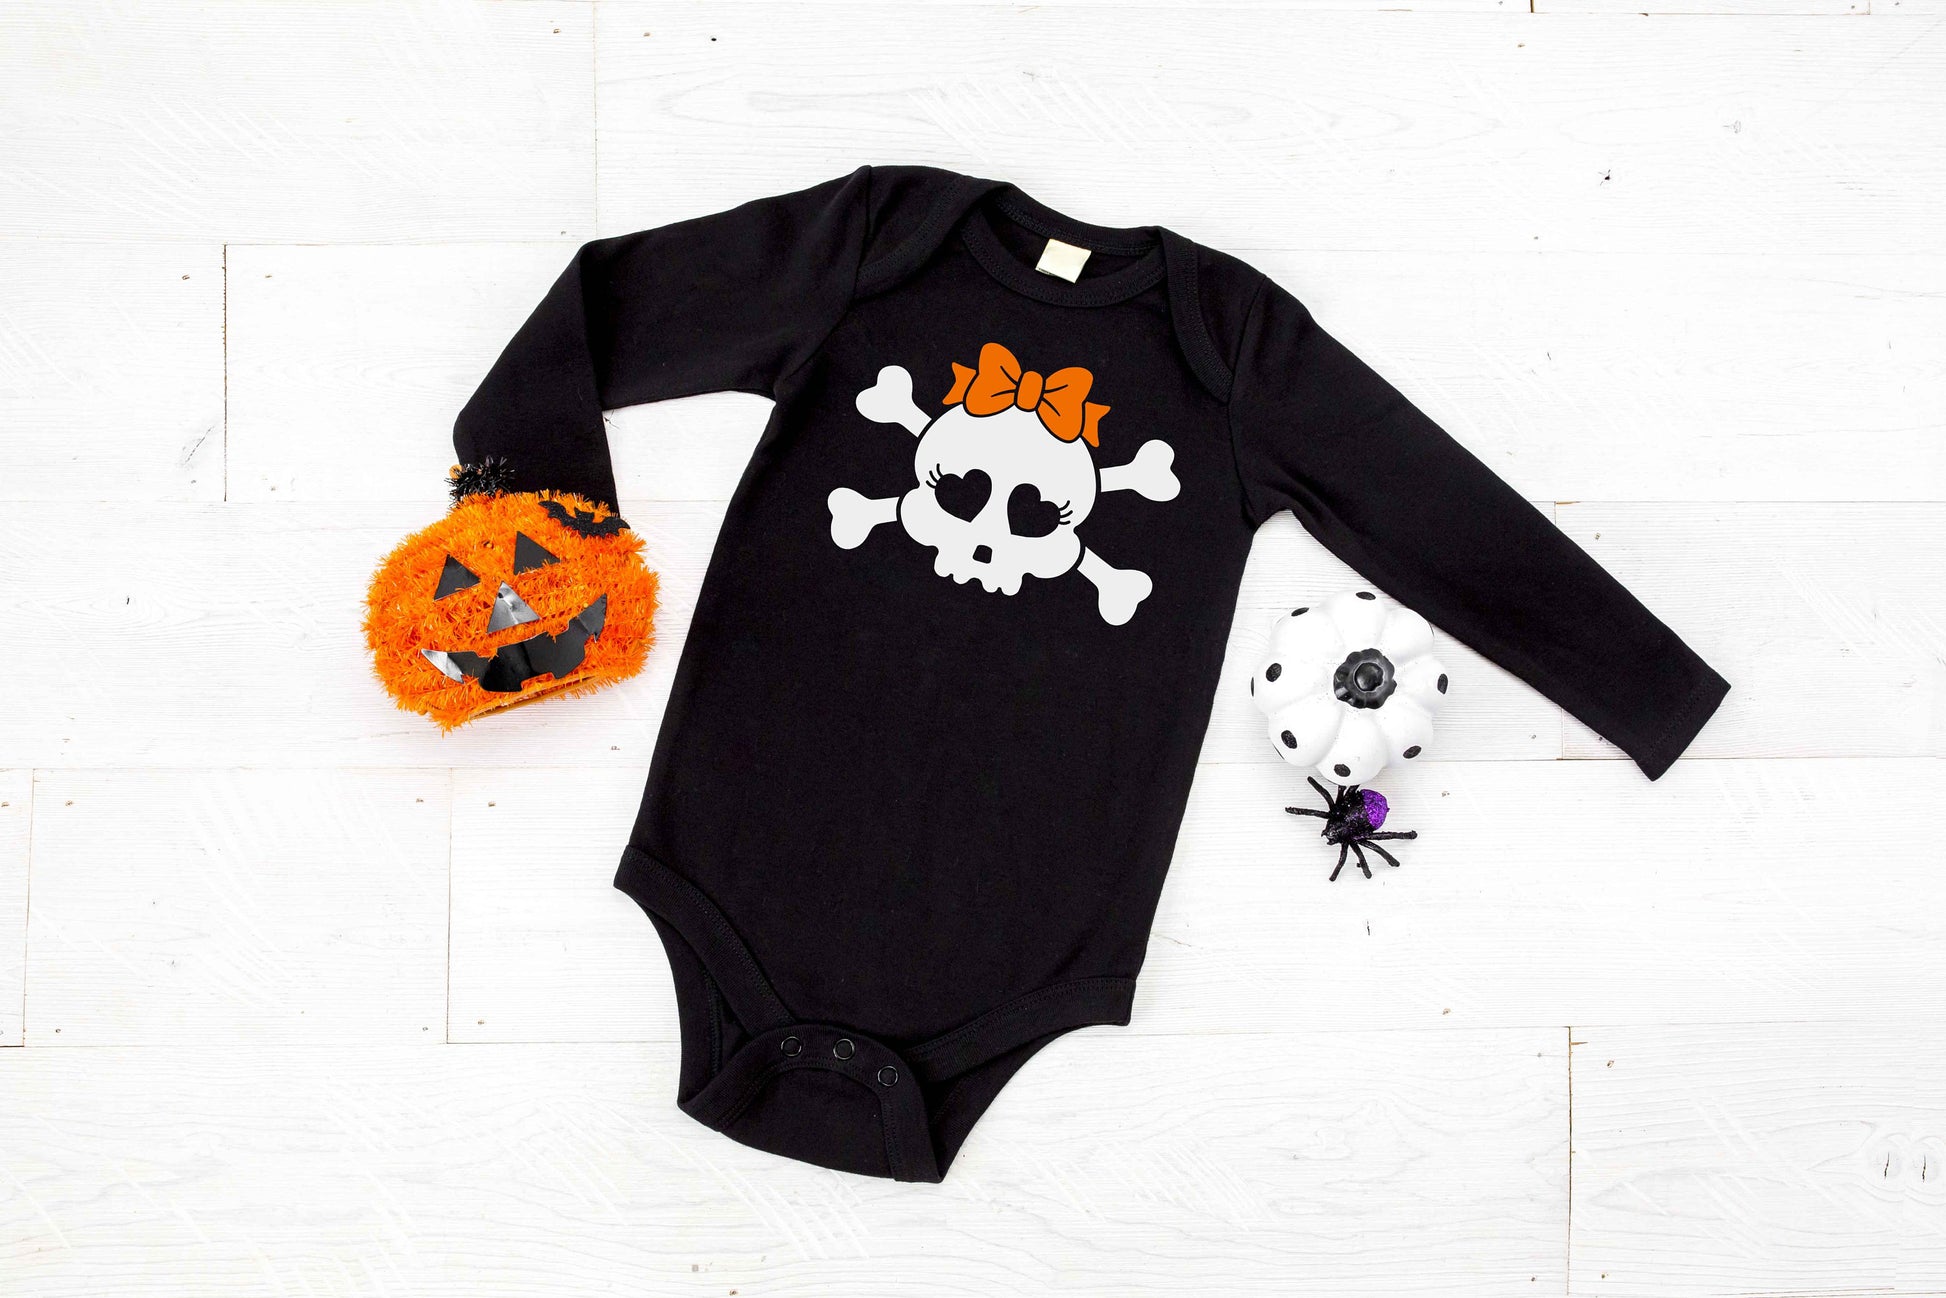 Cute Skull Girl Infant Halloween Shirt or Bodysuit - My First Halloween - baby halloween shirt